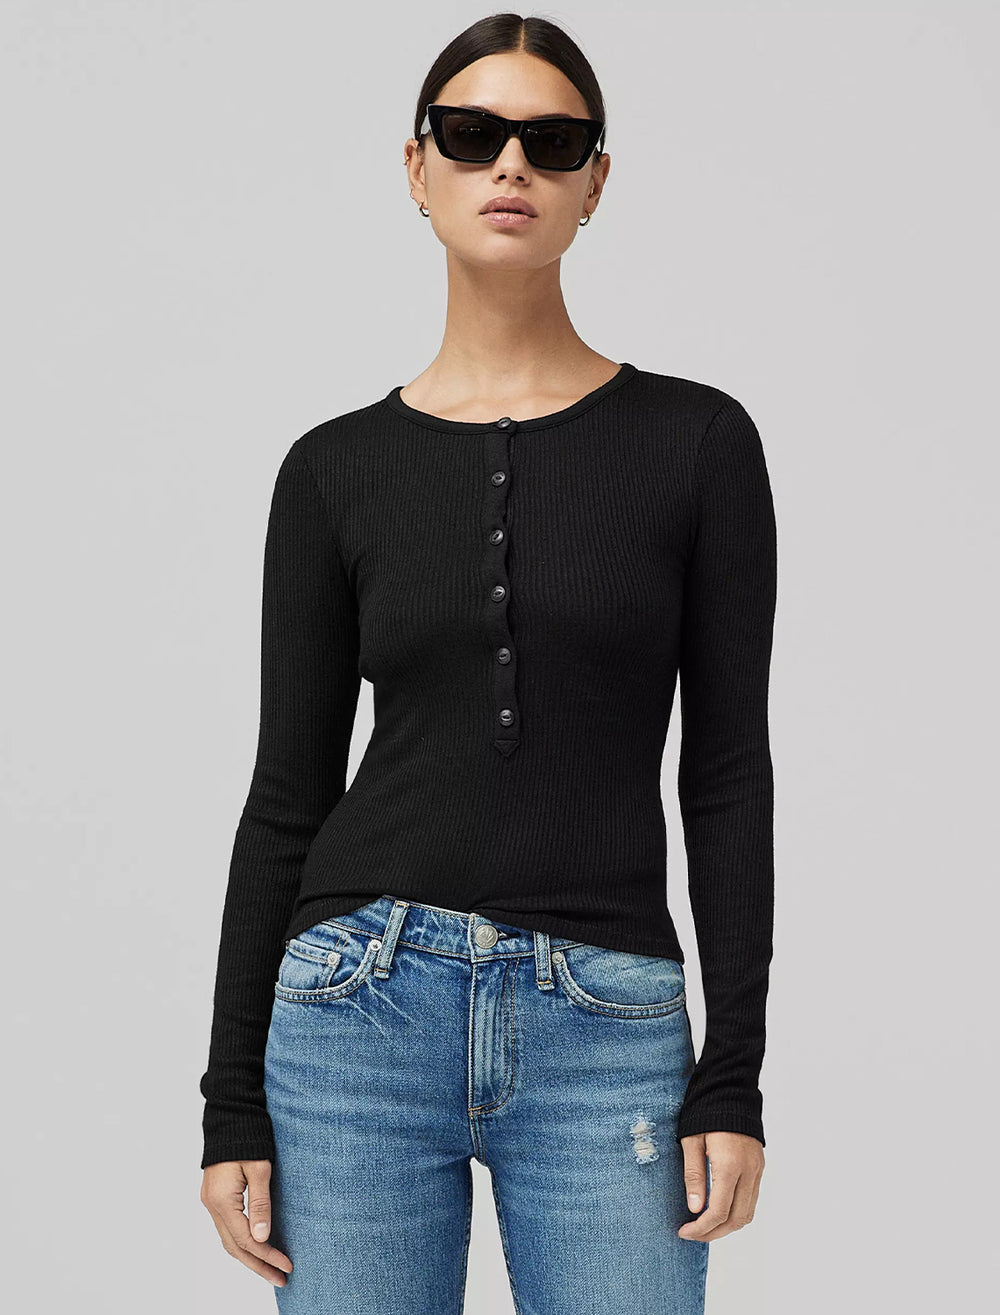 Model wearing Rag & Bone's the knit rib henley in black.